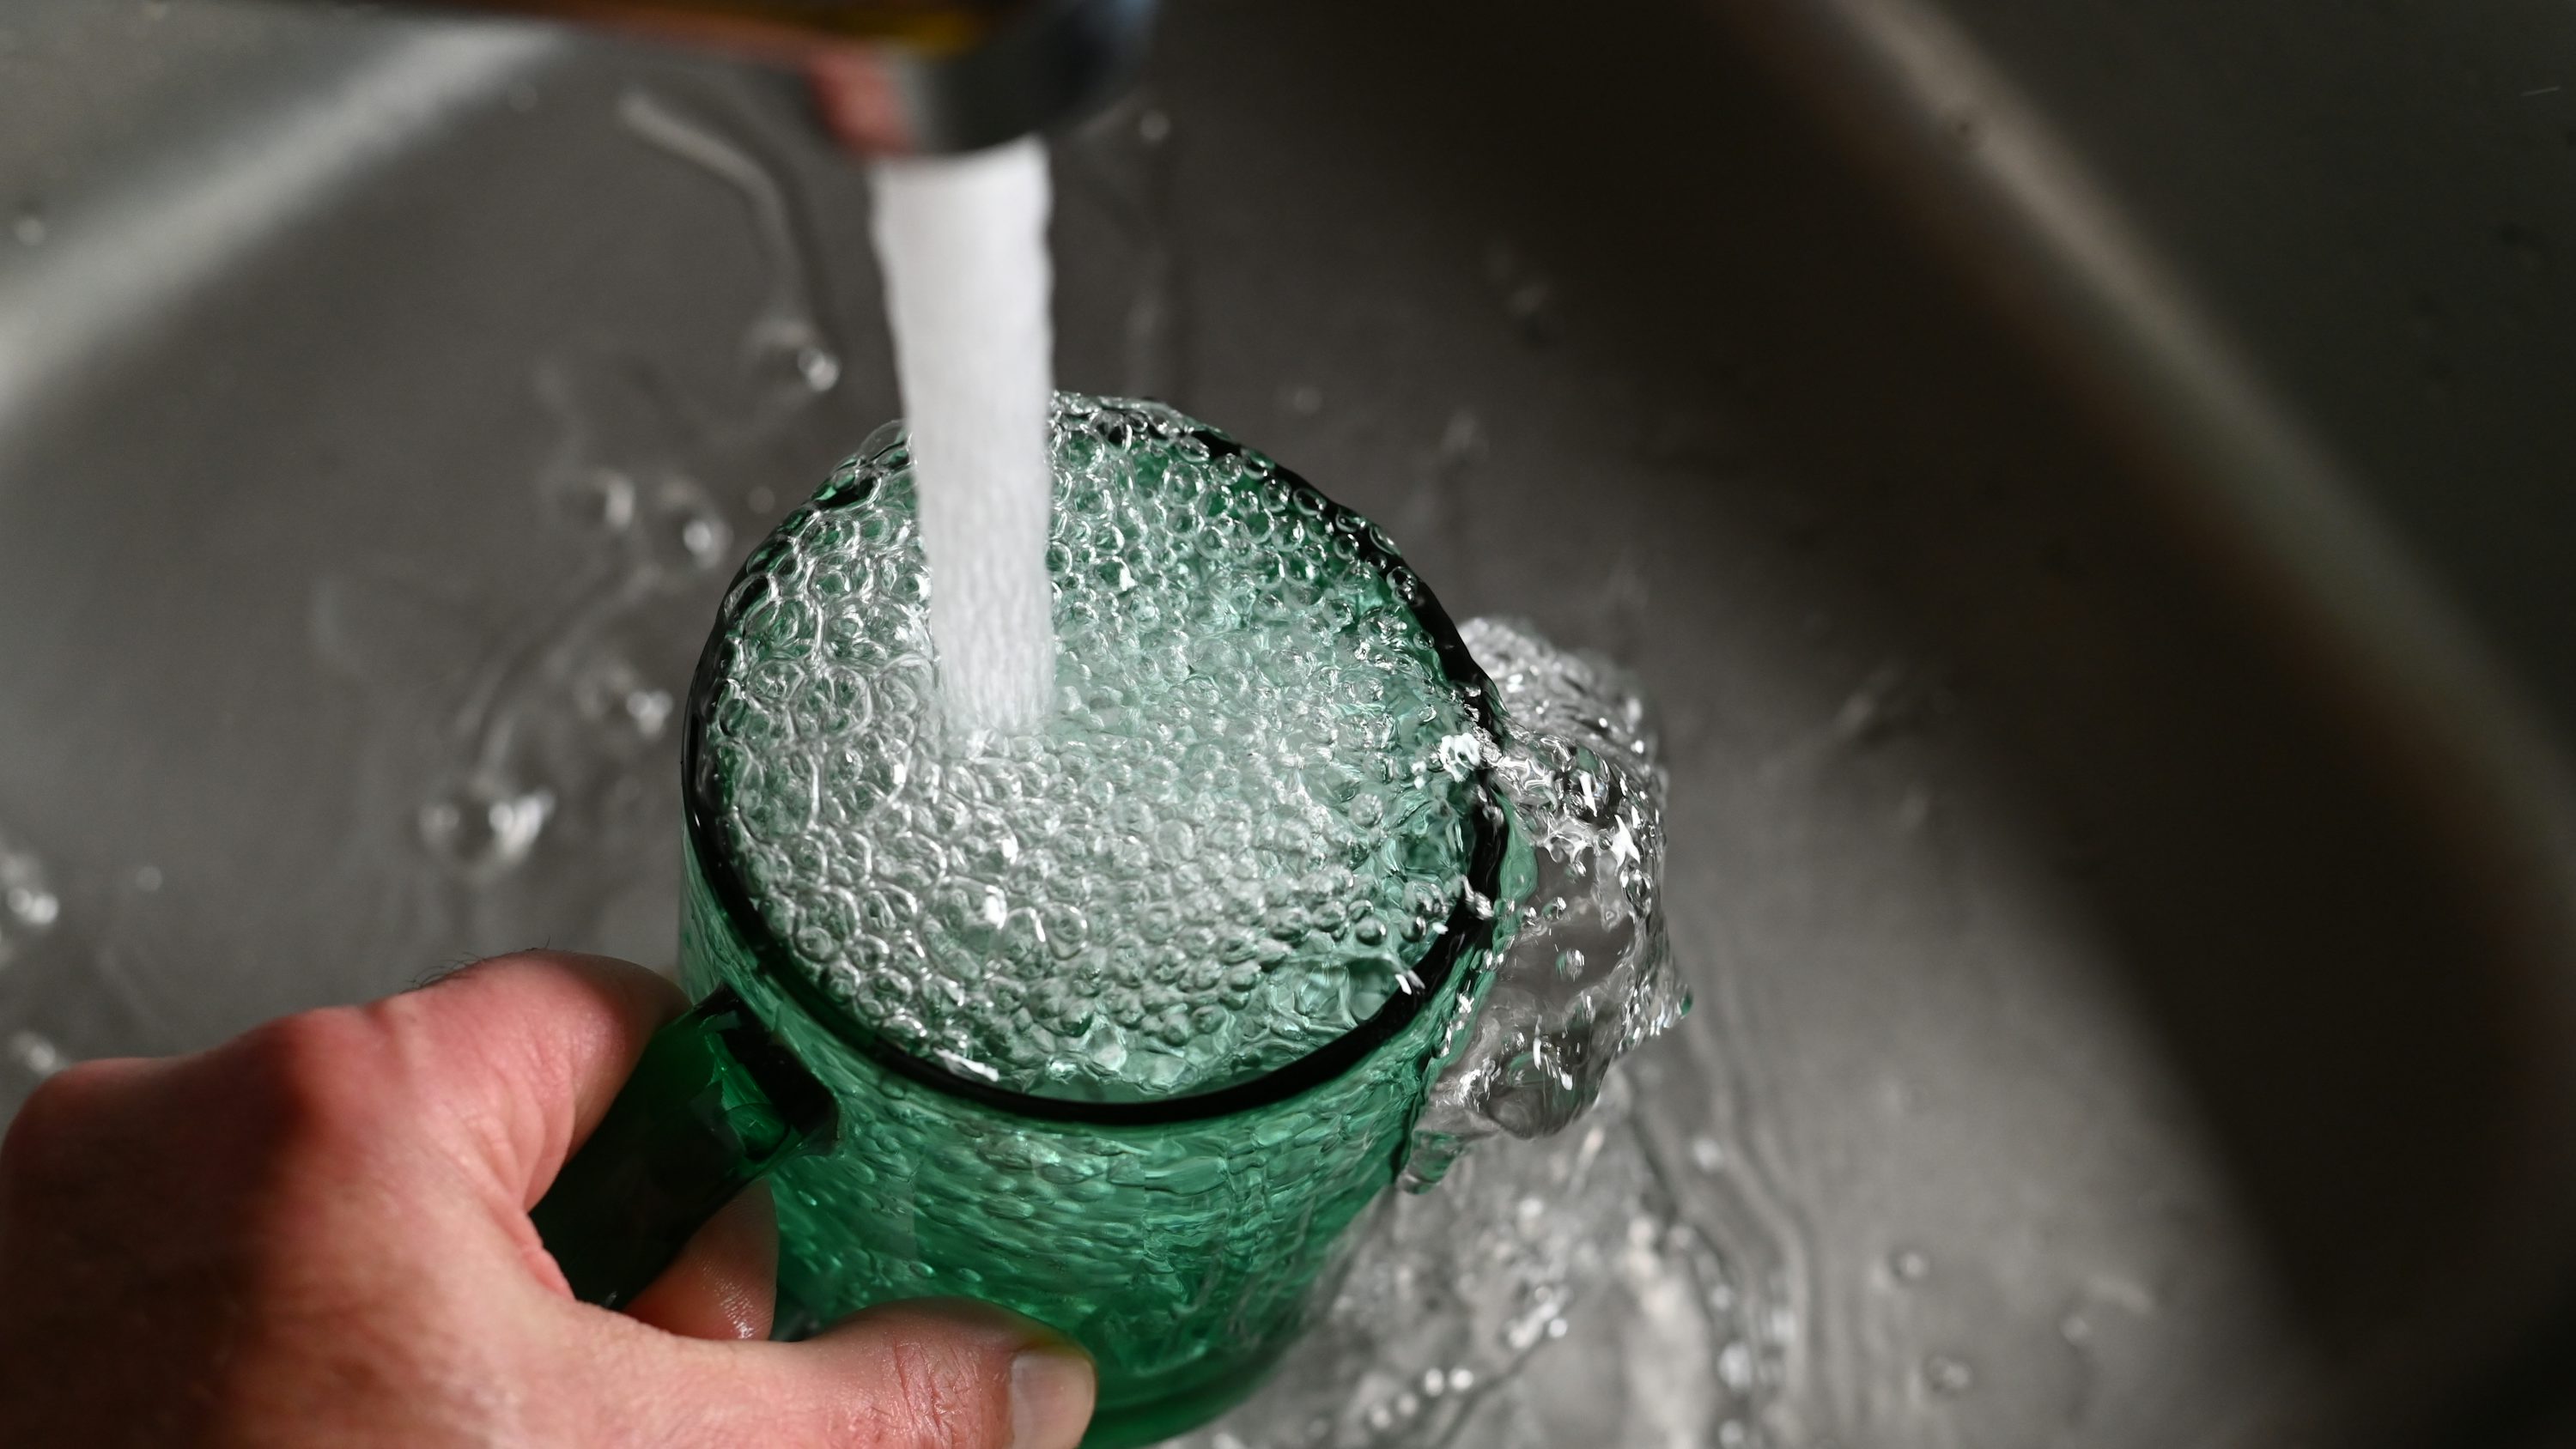 La mano de una persona sostiene una taza verde con agua que sale de ella